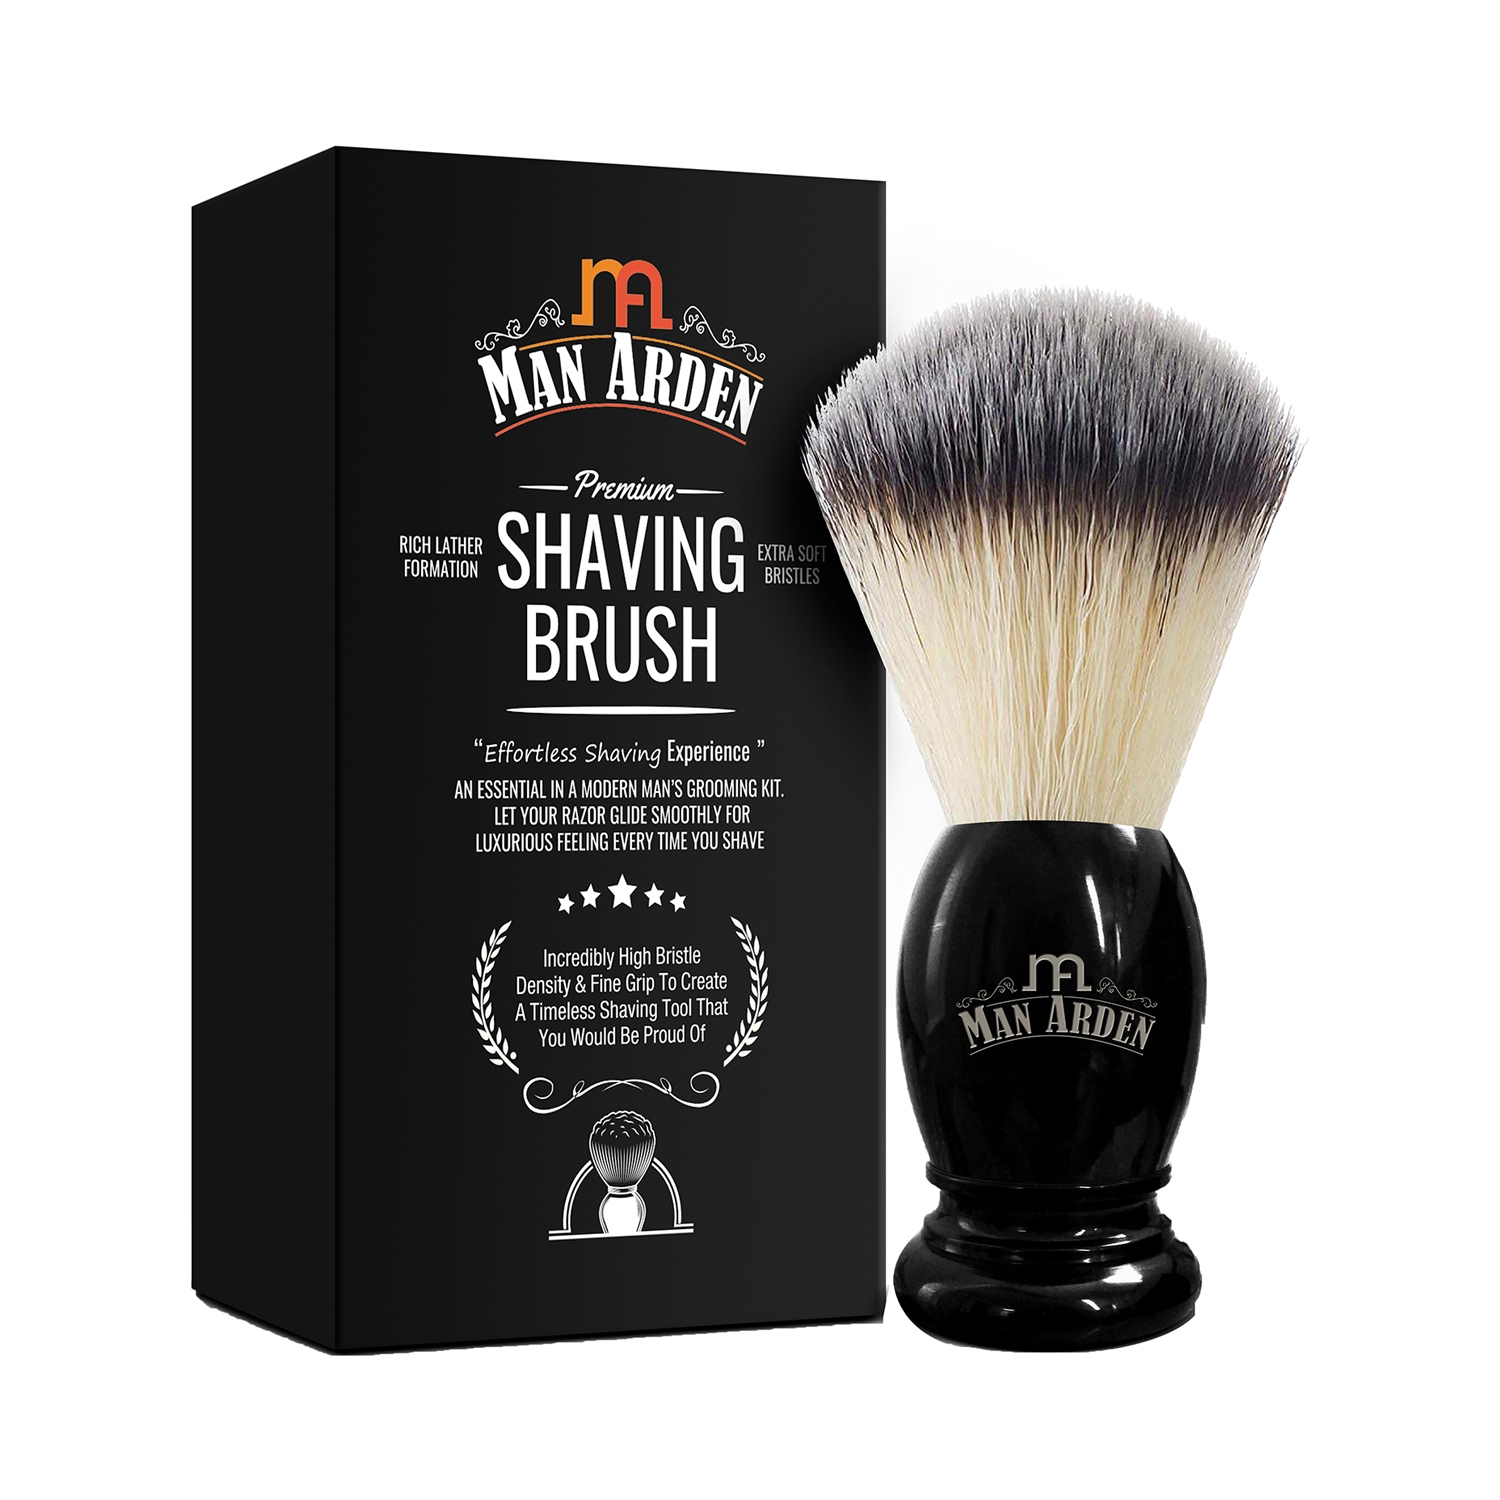 Man Arden | Man Arden Premium Shaving Brush With Extra Soft Bristles - Black